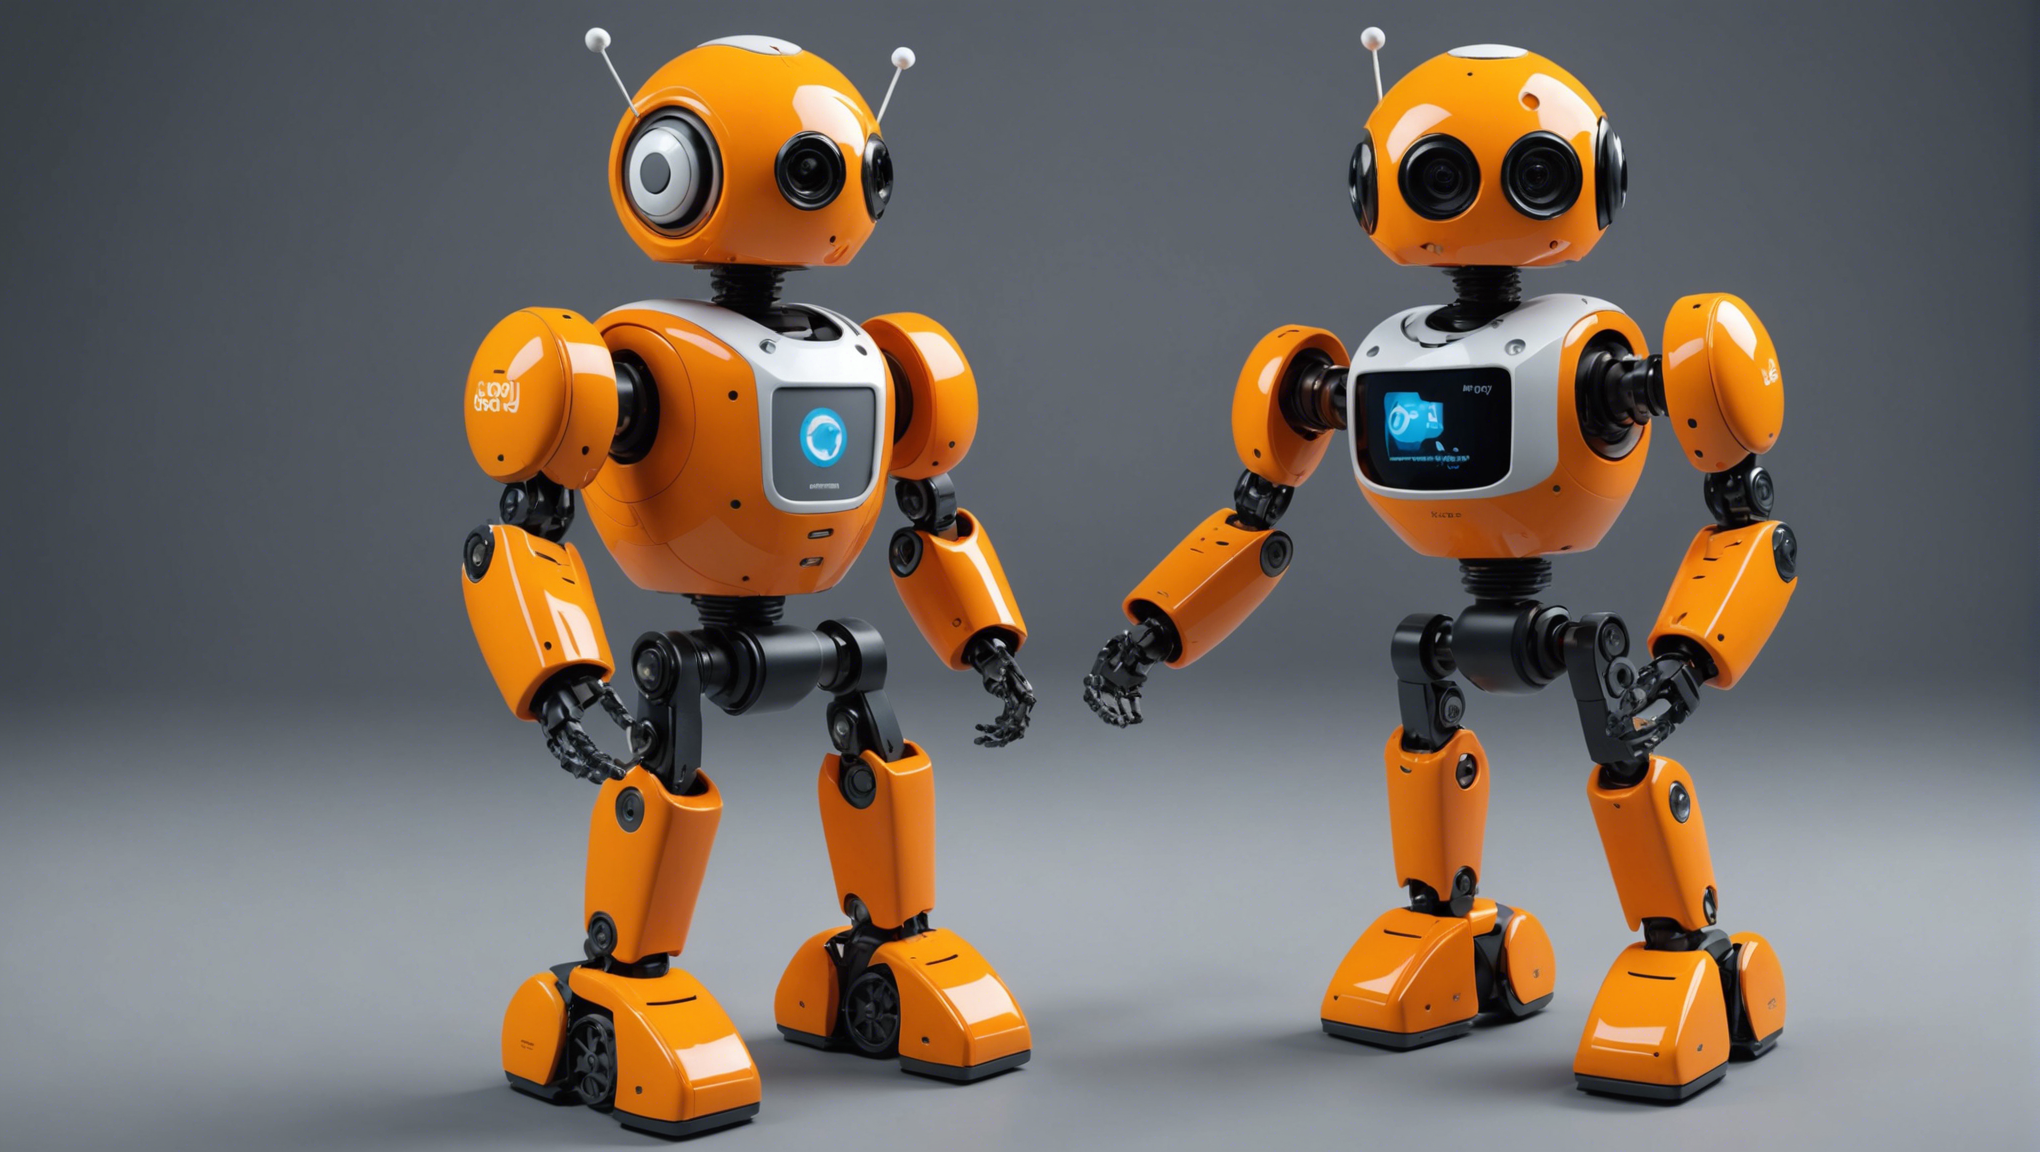 découvrez poppy, le robot humanoïde imprimé en 3d pour s'amuser en robotique ! explorez les possibilités de l'impression 3d et de la robotique avec poppy, un robot ludique et éducatif.